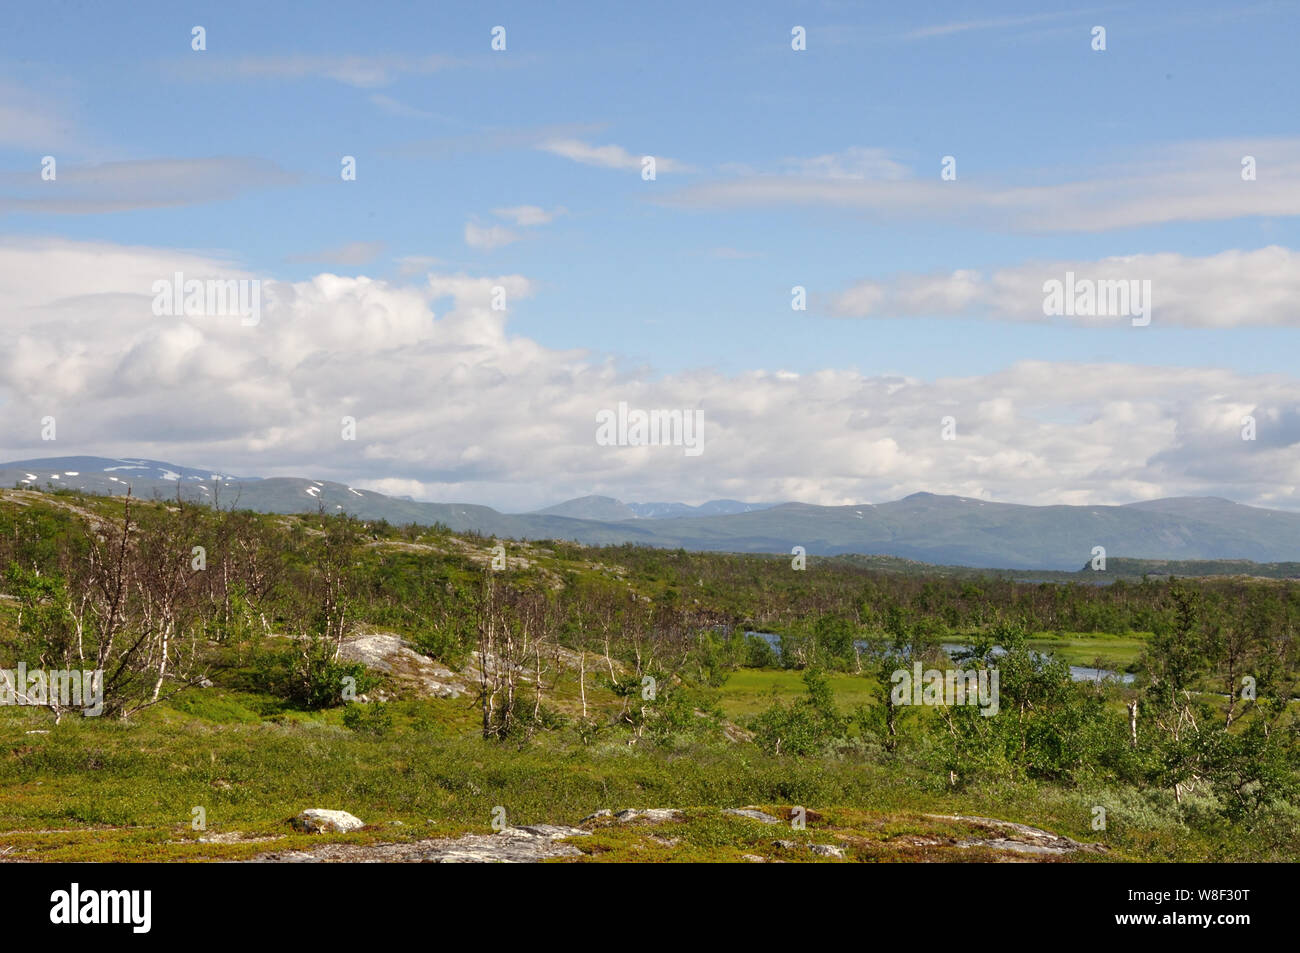 Auf der Fahrt von Schnweden nach Norwegen beeindruckende Landschaften vor der Norwegischen Grenze. Foto Stock